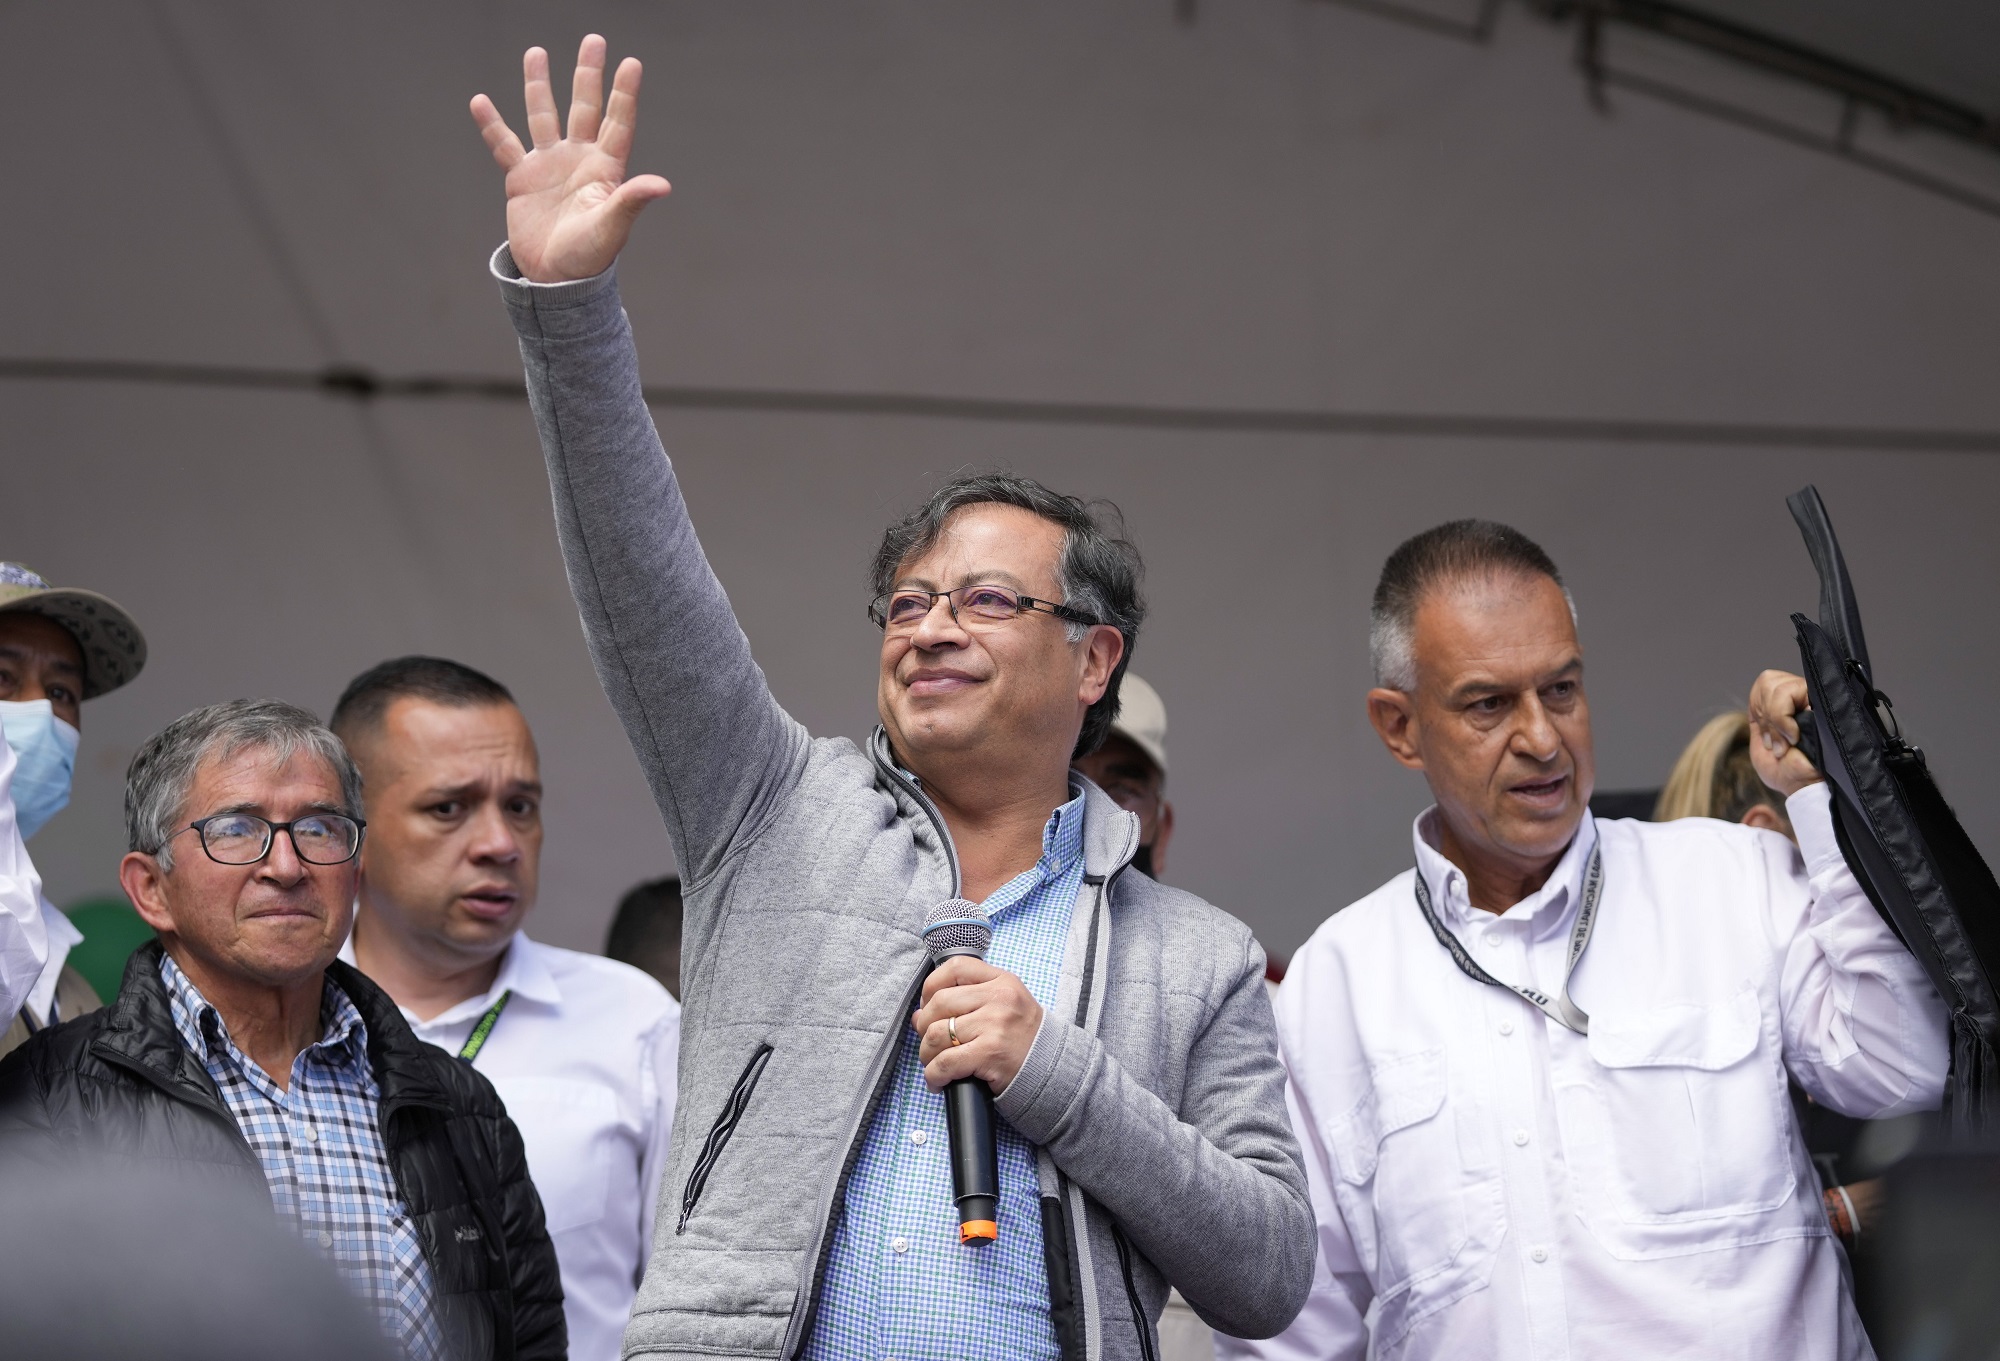 Κολομβία: Πρώτη φορά πρόεδρος από την αριστερά